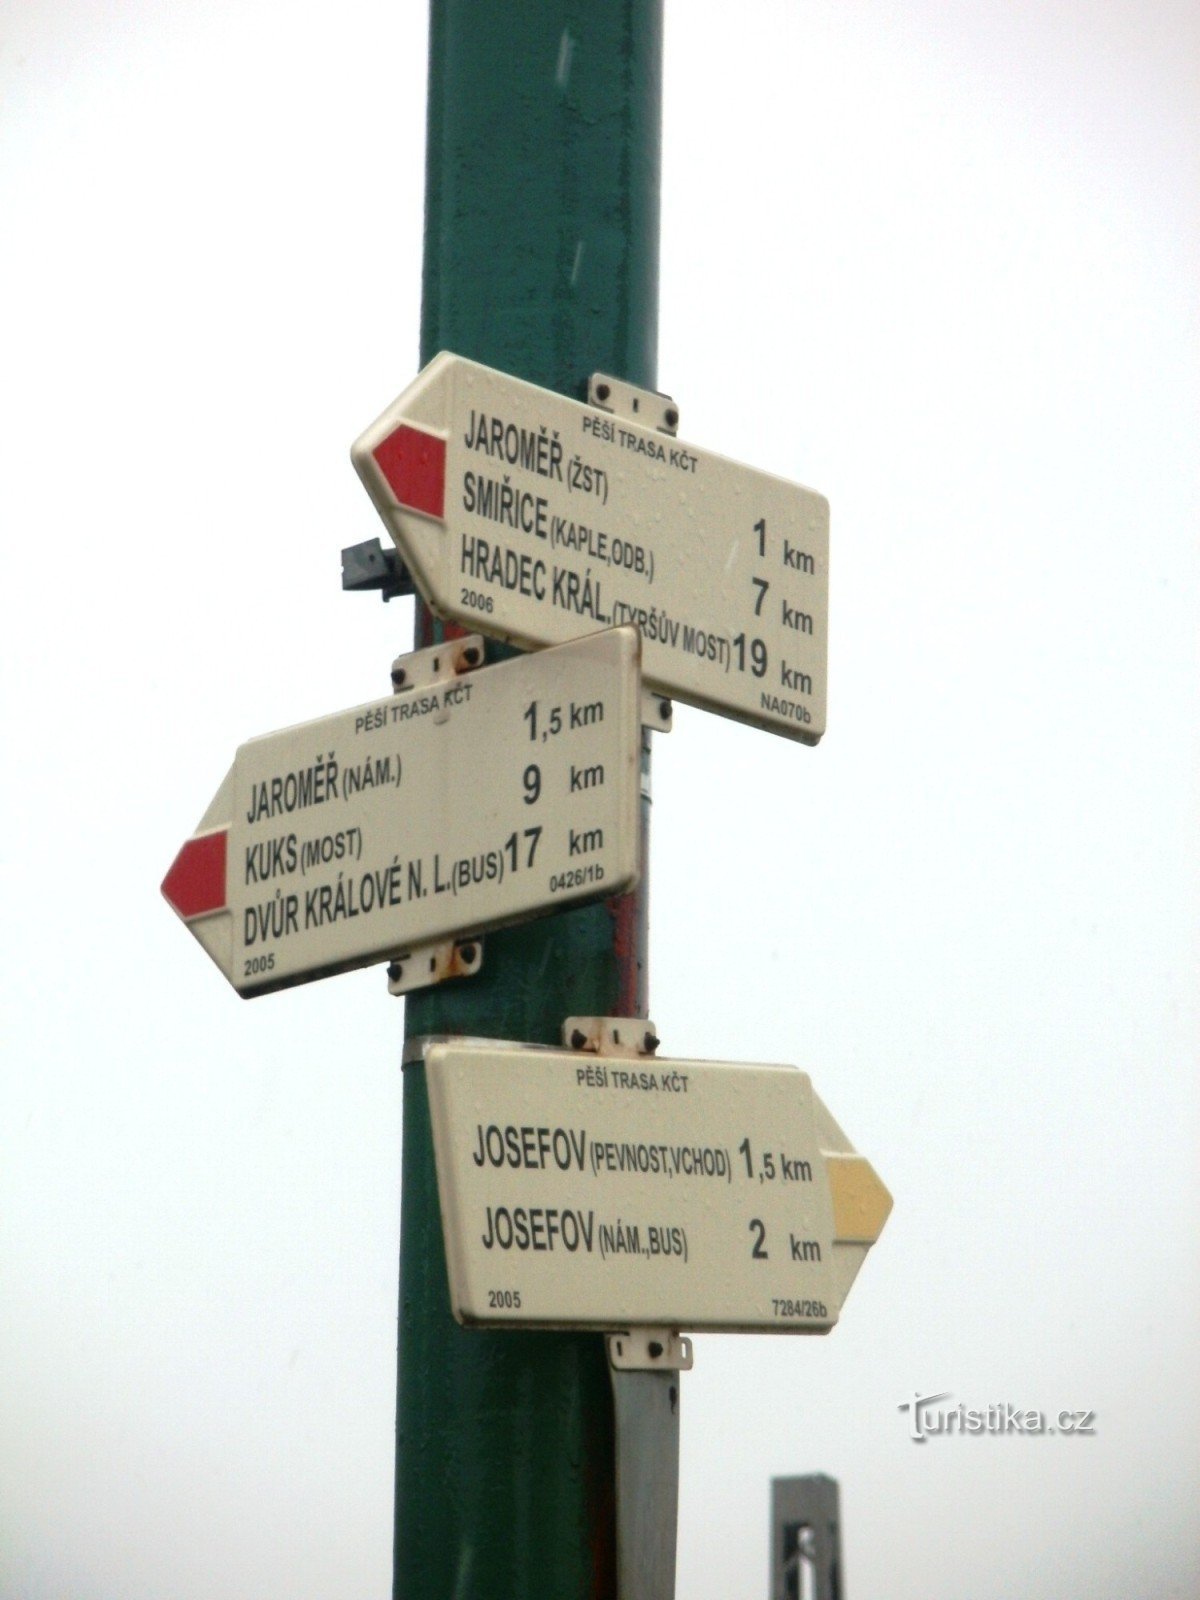 turističko raskrižje Jaroměř - na željezničkom prijelazu